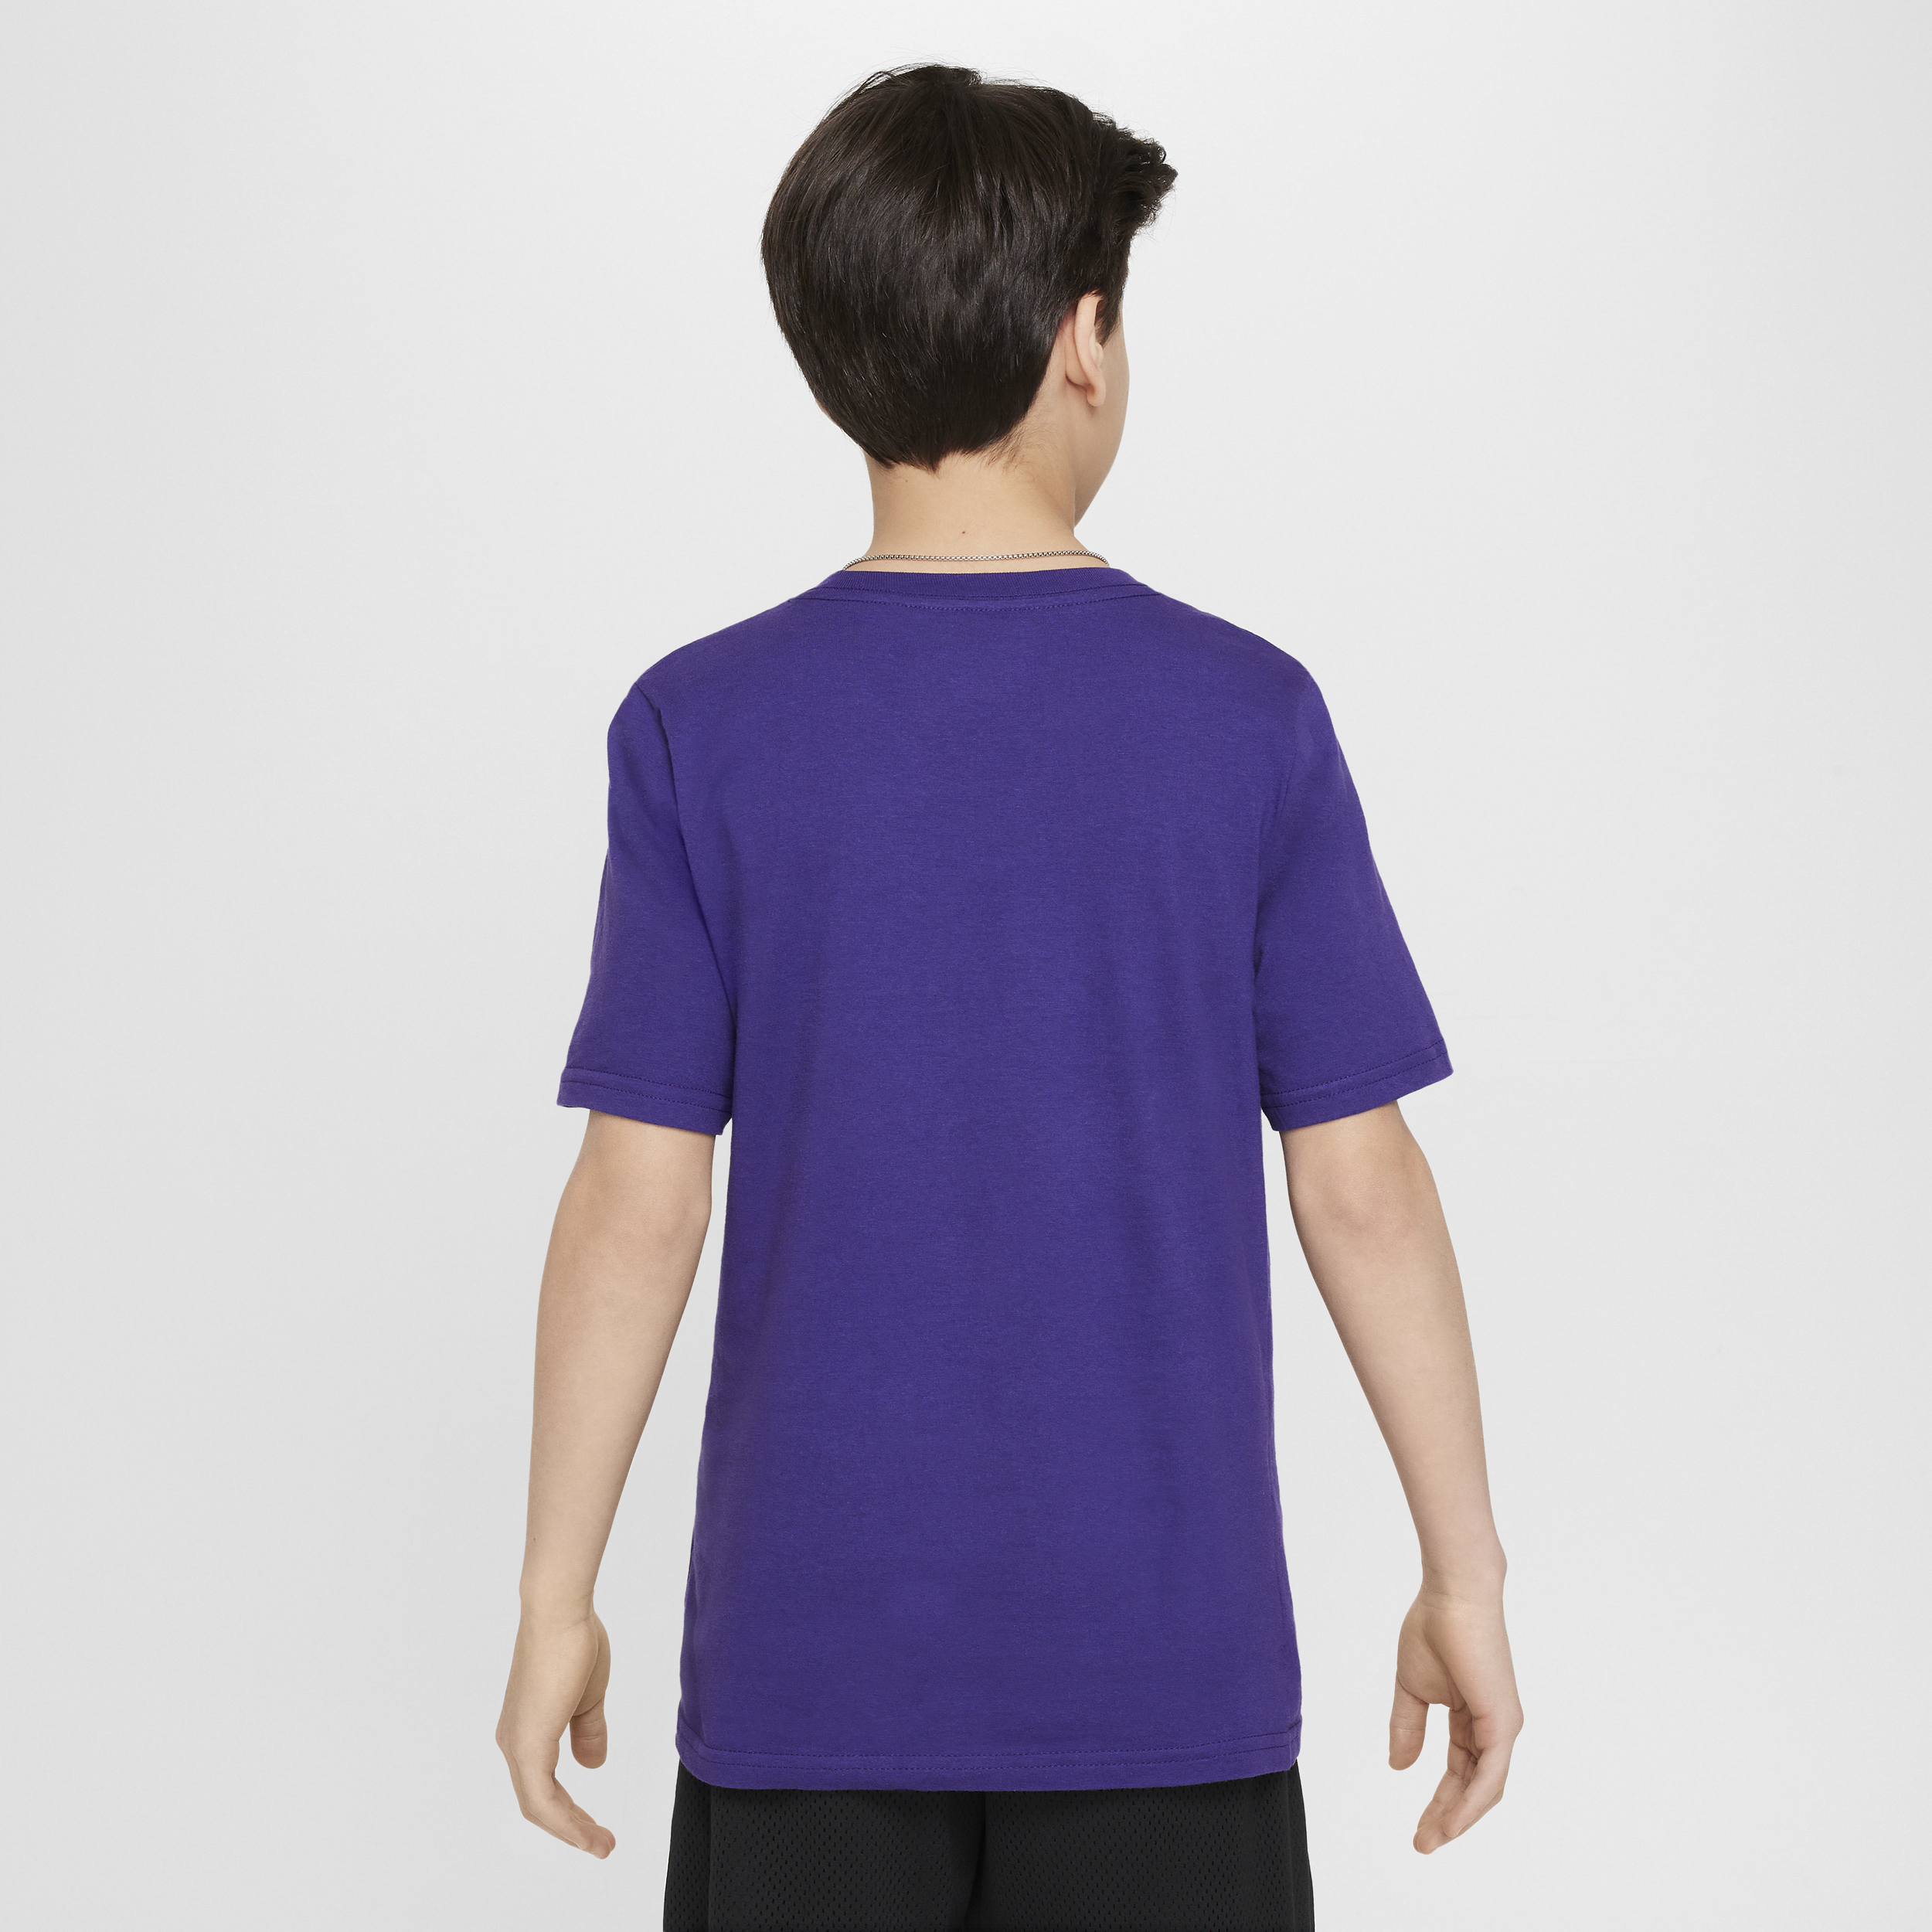 Nike Los Angeles Lakers Essential NBA-shirt met logo voor jongens Paars